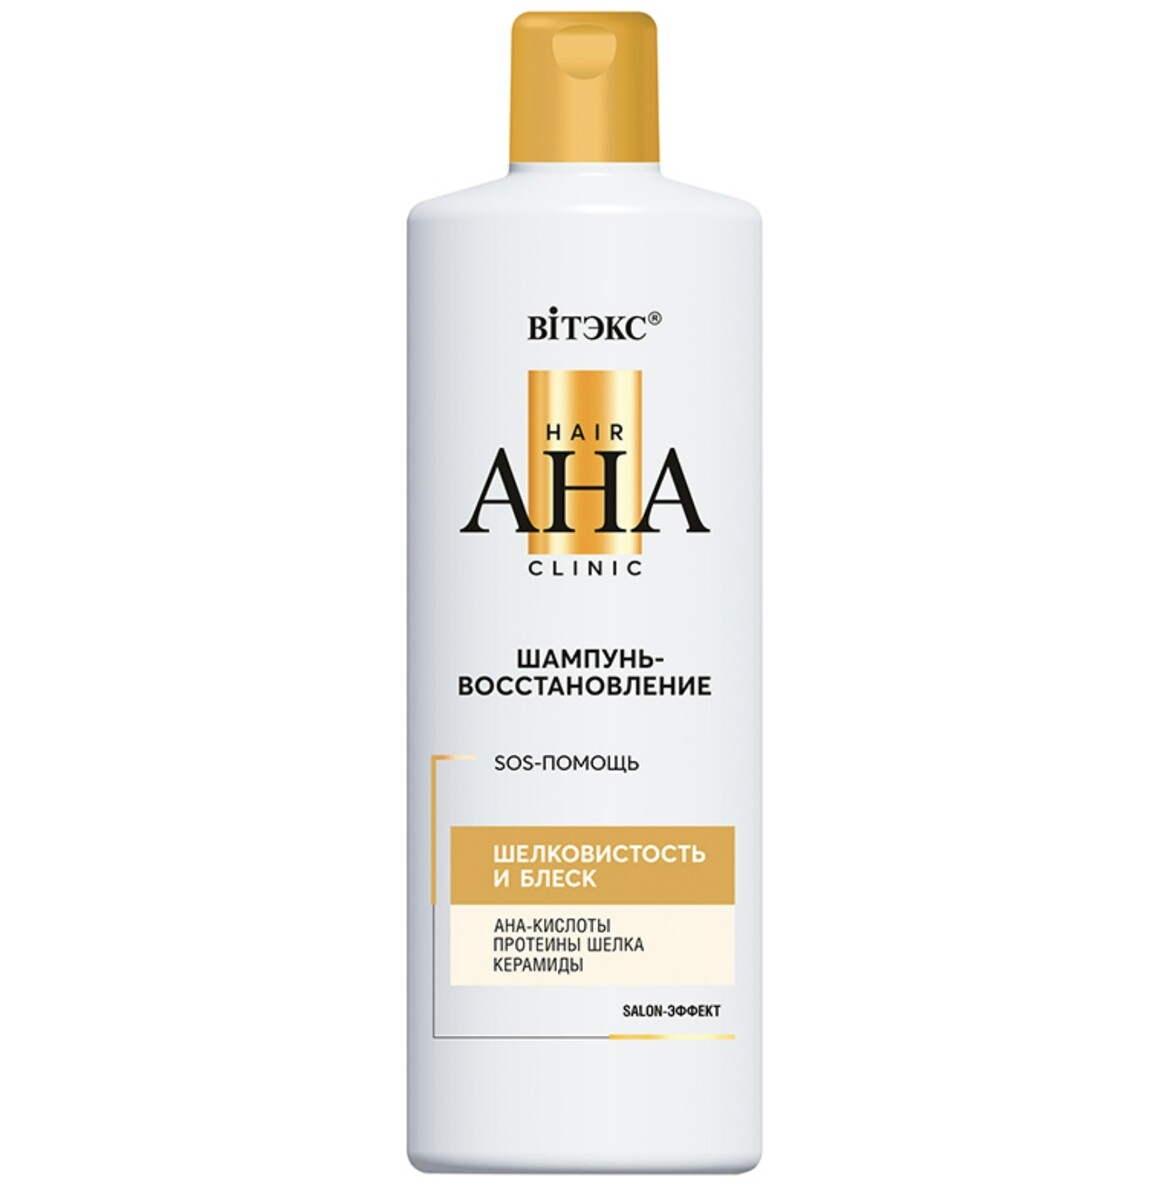 Hair aha clinic шампунь-восстановление для волос шелковистость и блеск 450мл шампунь synergetic укрепление и питание hair therapy 3 5 л